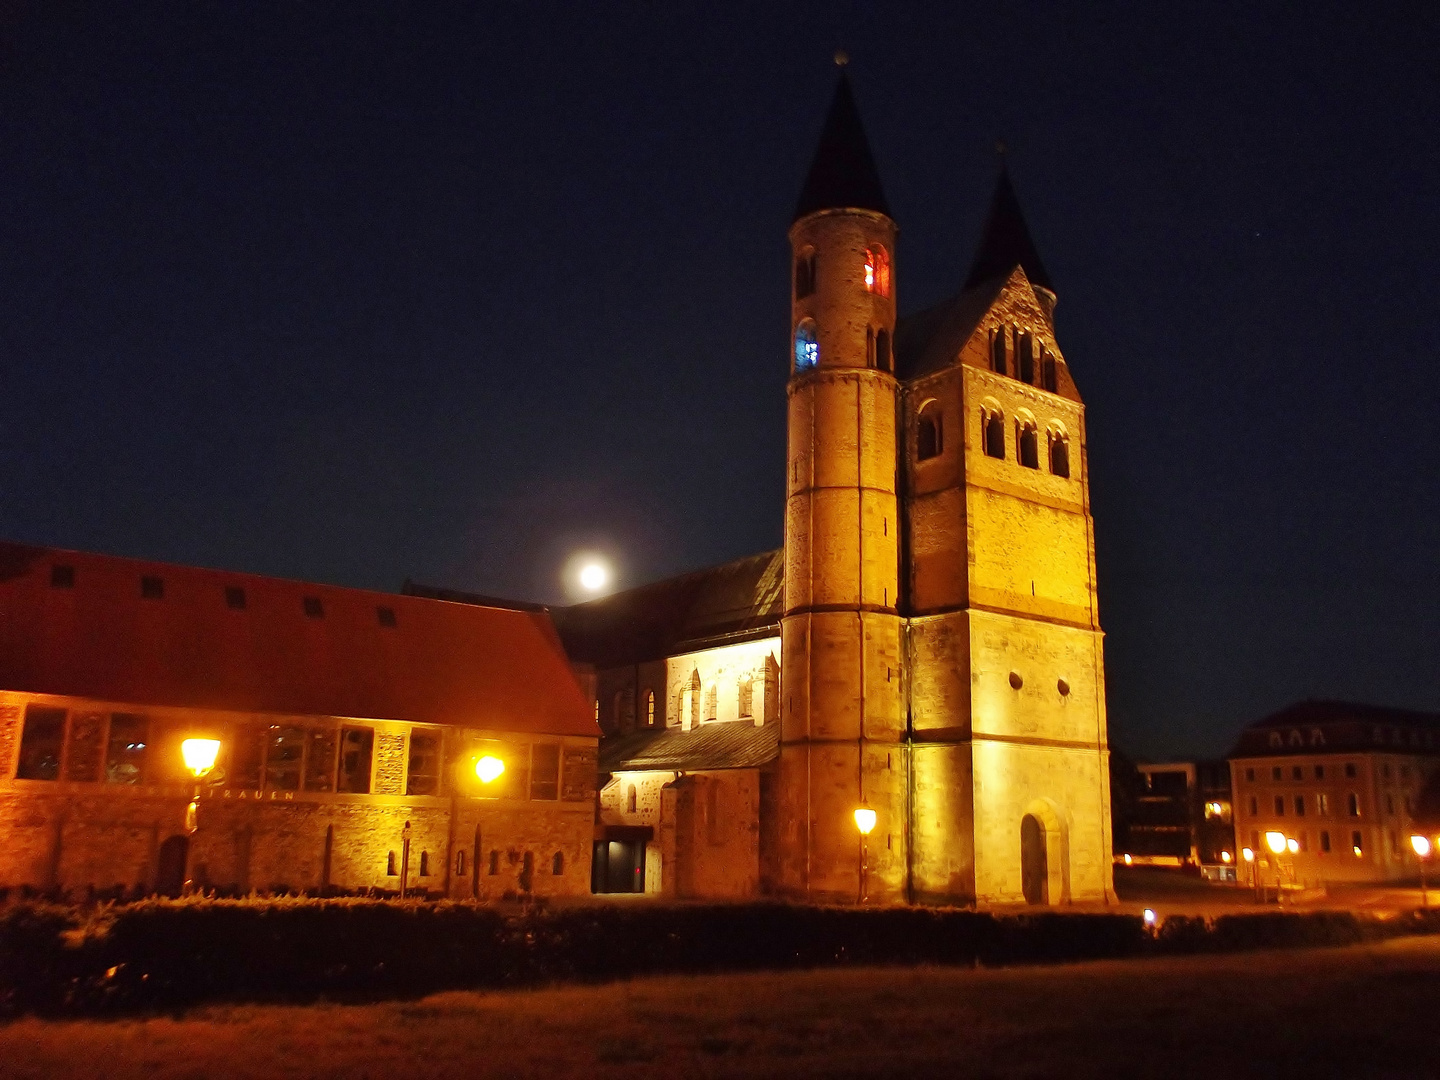 Kloster Unser Lieben Frauen bei Nacht mit aufgehenden Mond